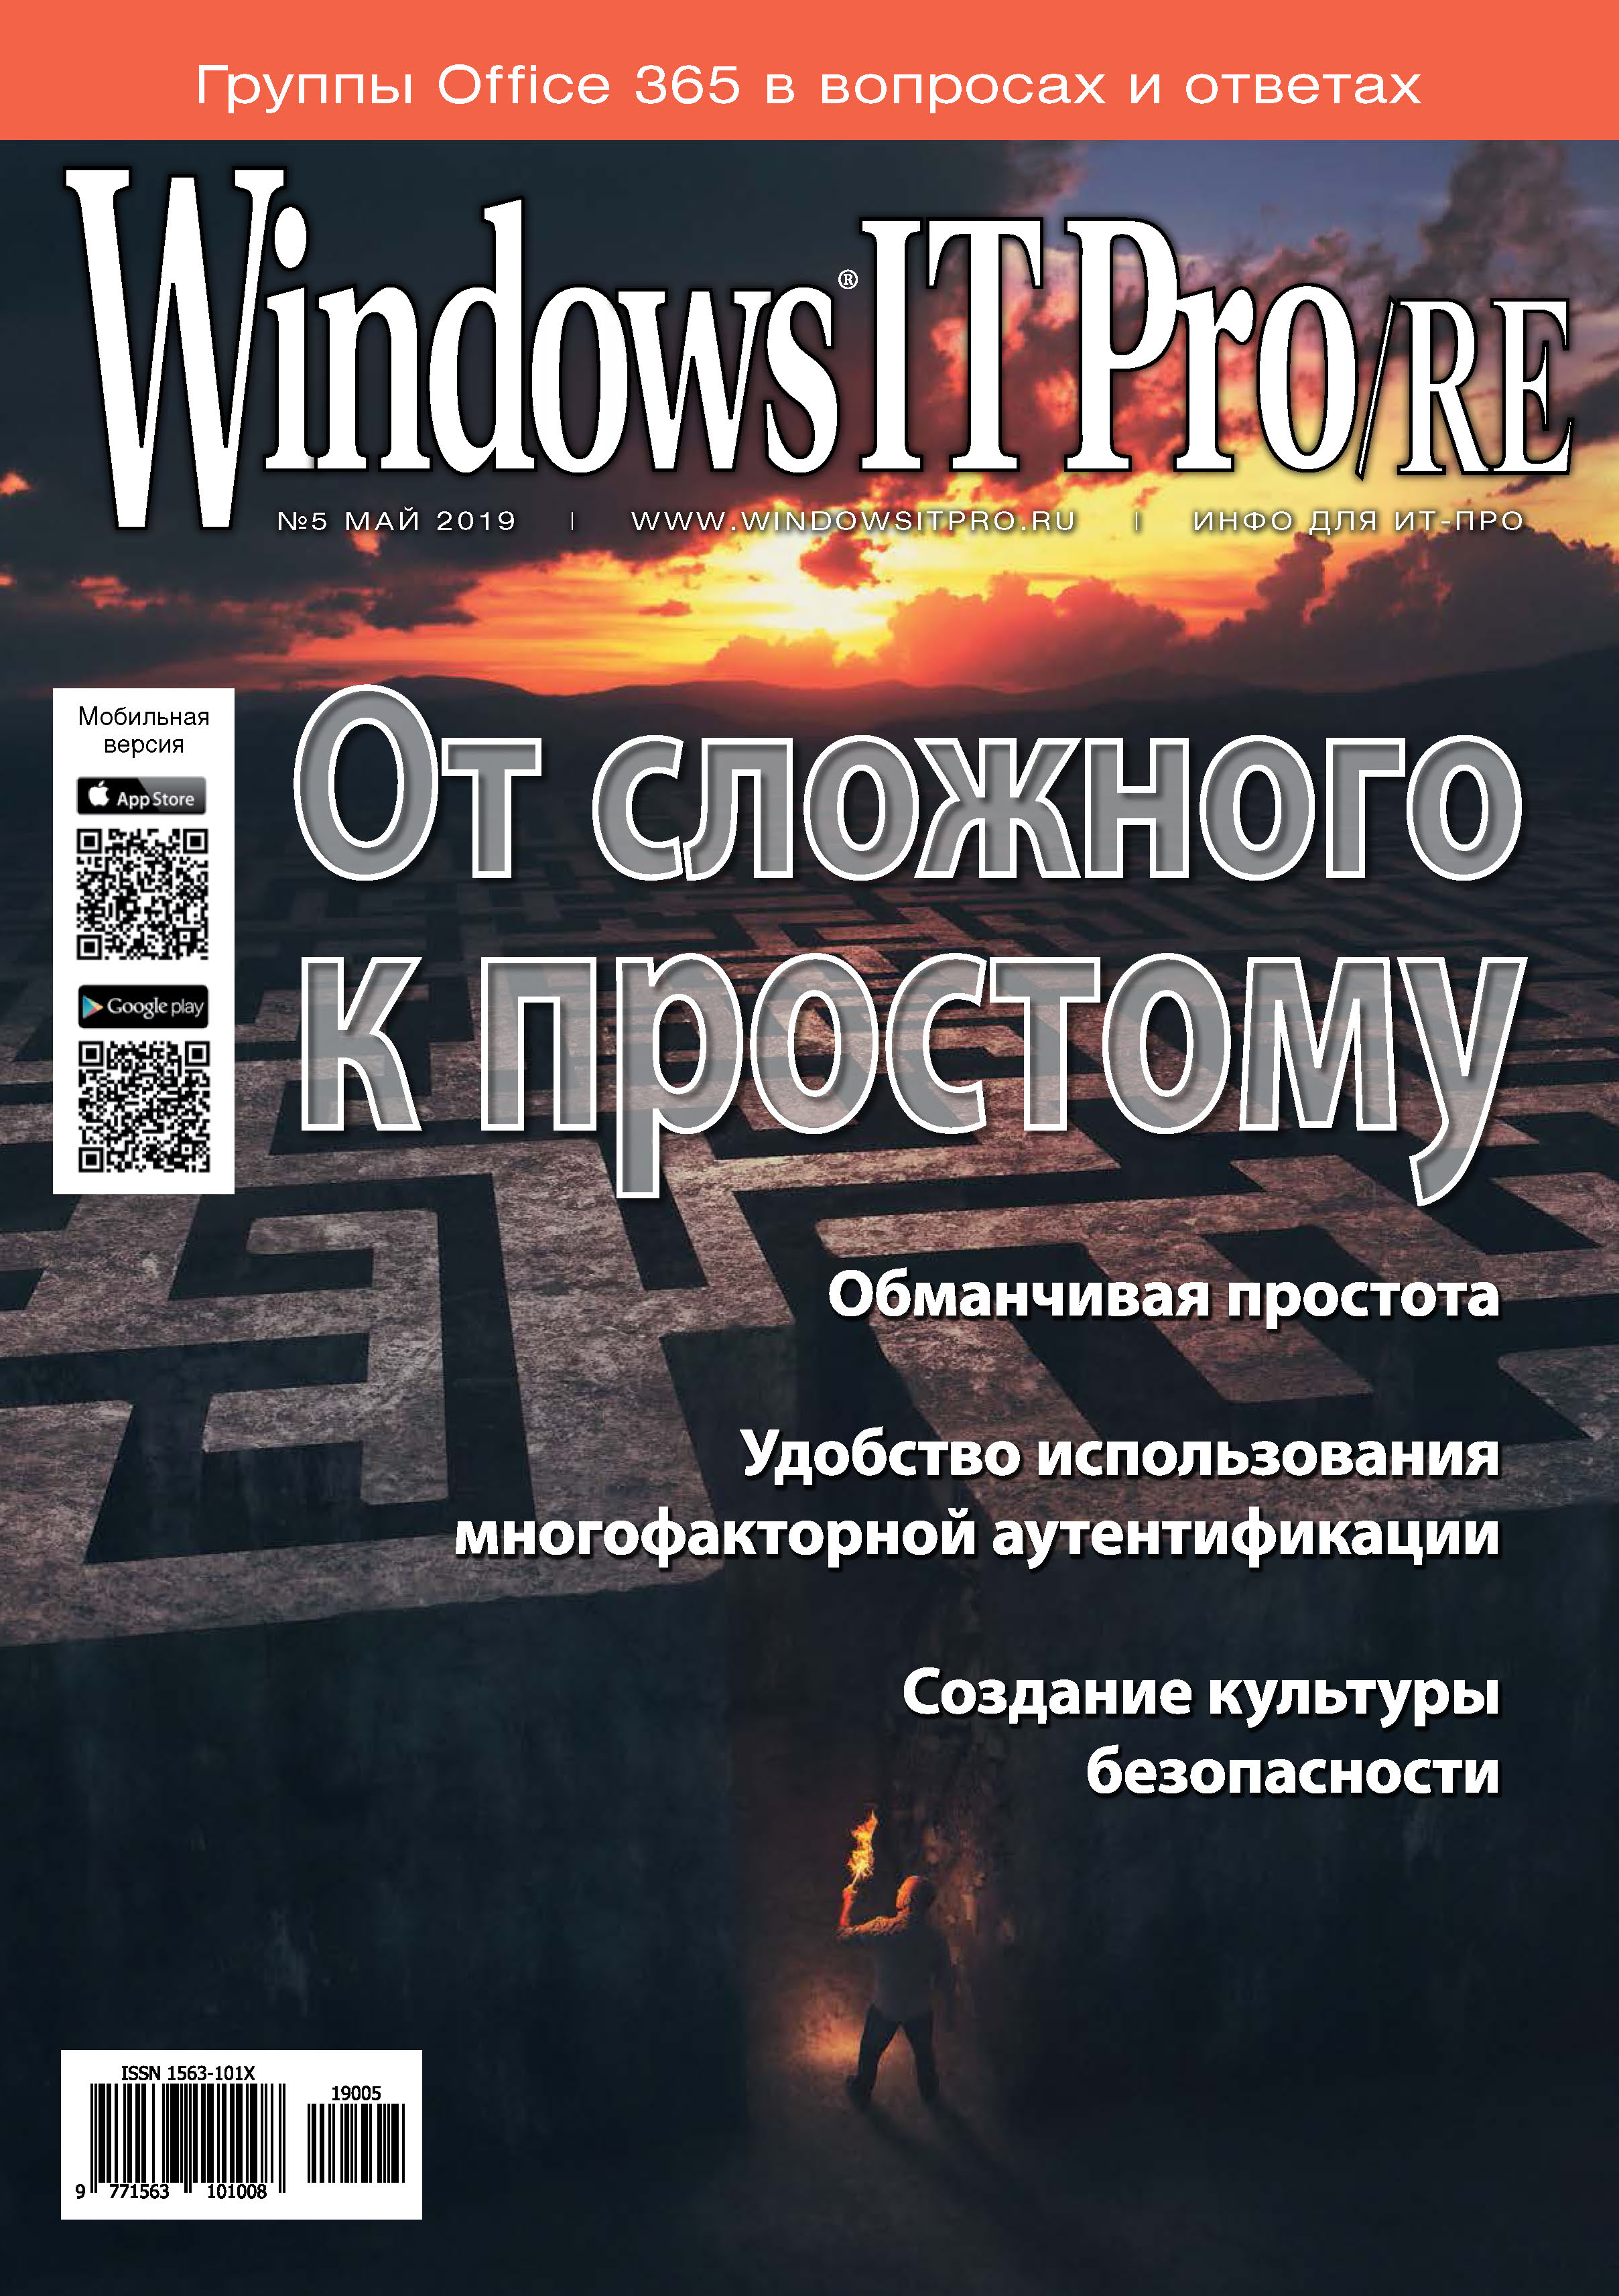 Windows IT Pro/RE№05/2019